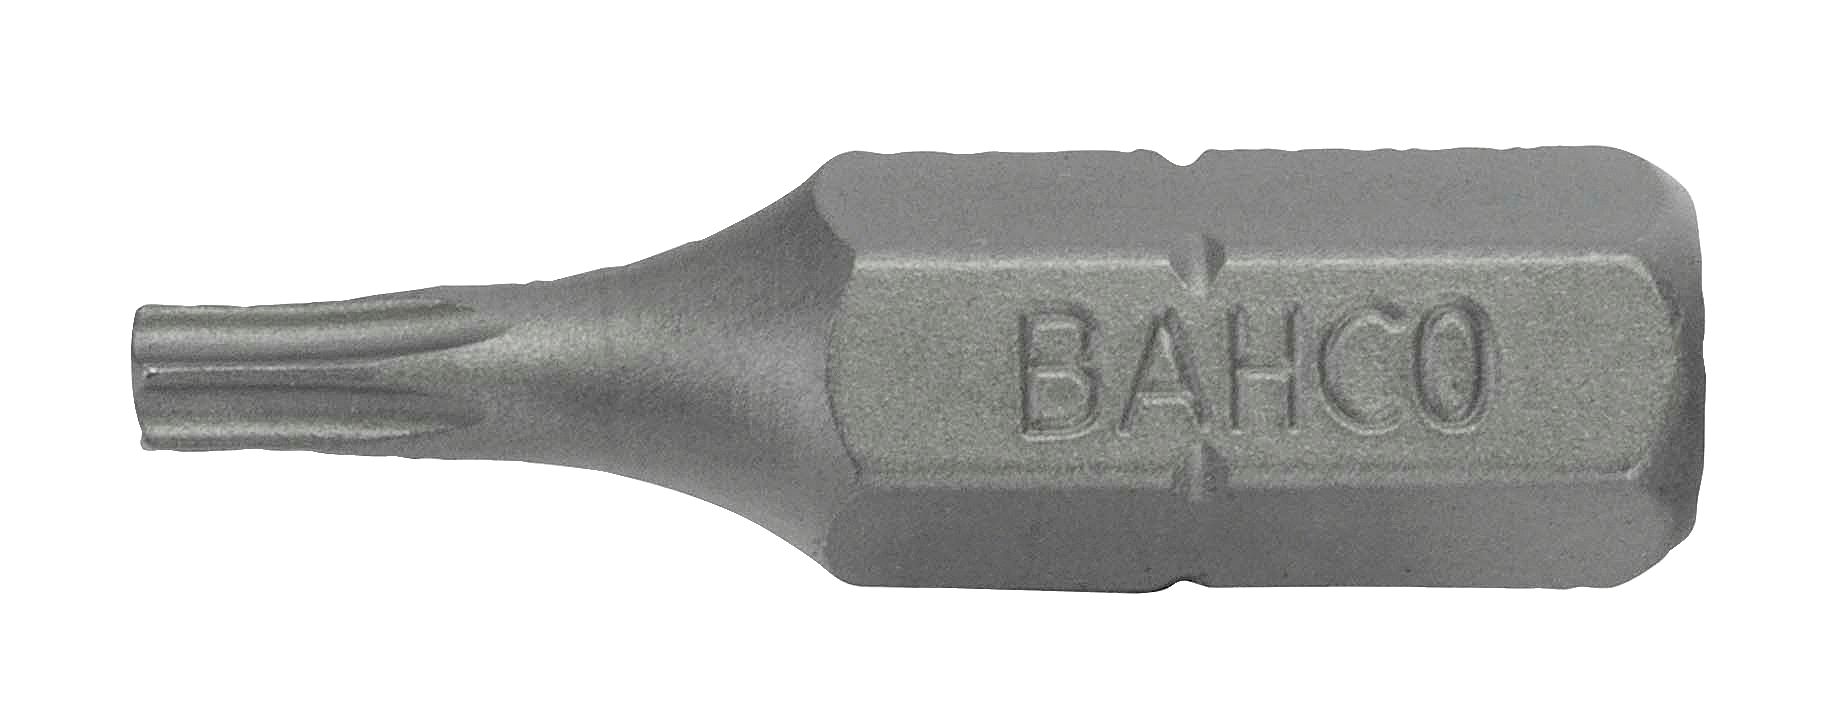 картинка Стандартные биты для отверток Torx®, 25 мм BAHCO 59S/T25-30P от магазина "Элит-инструмент"